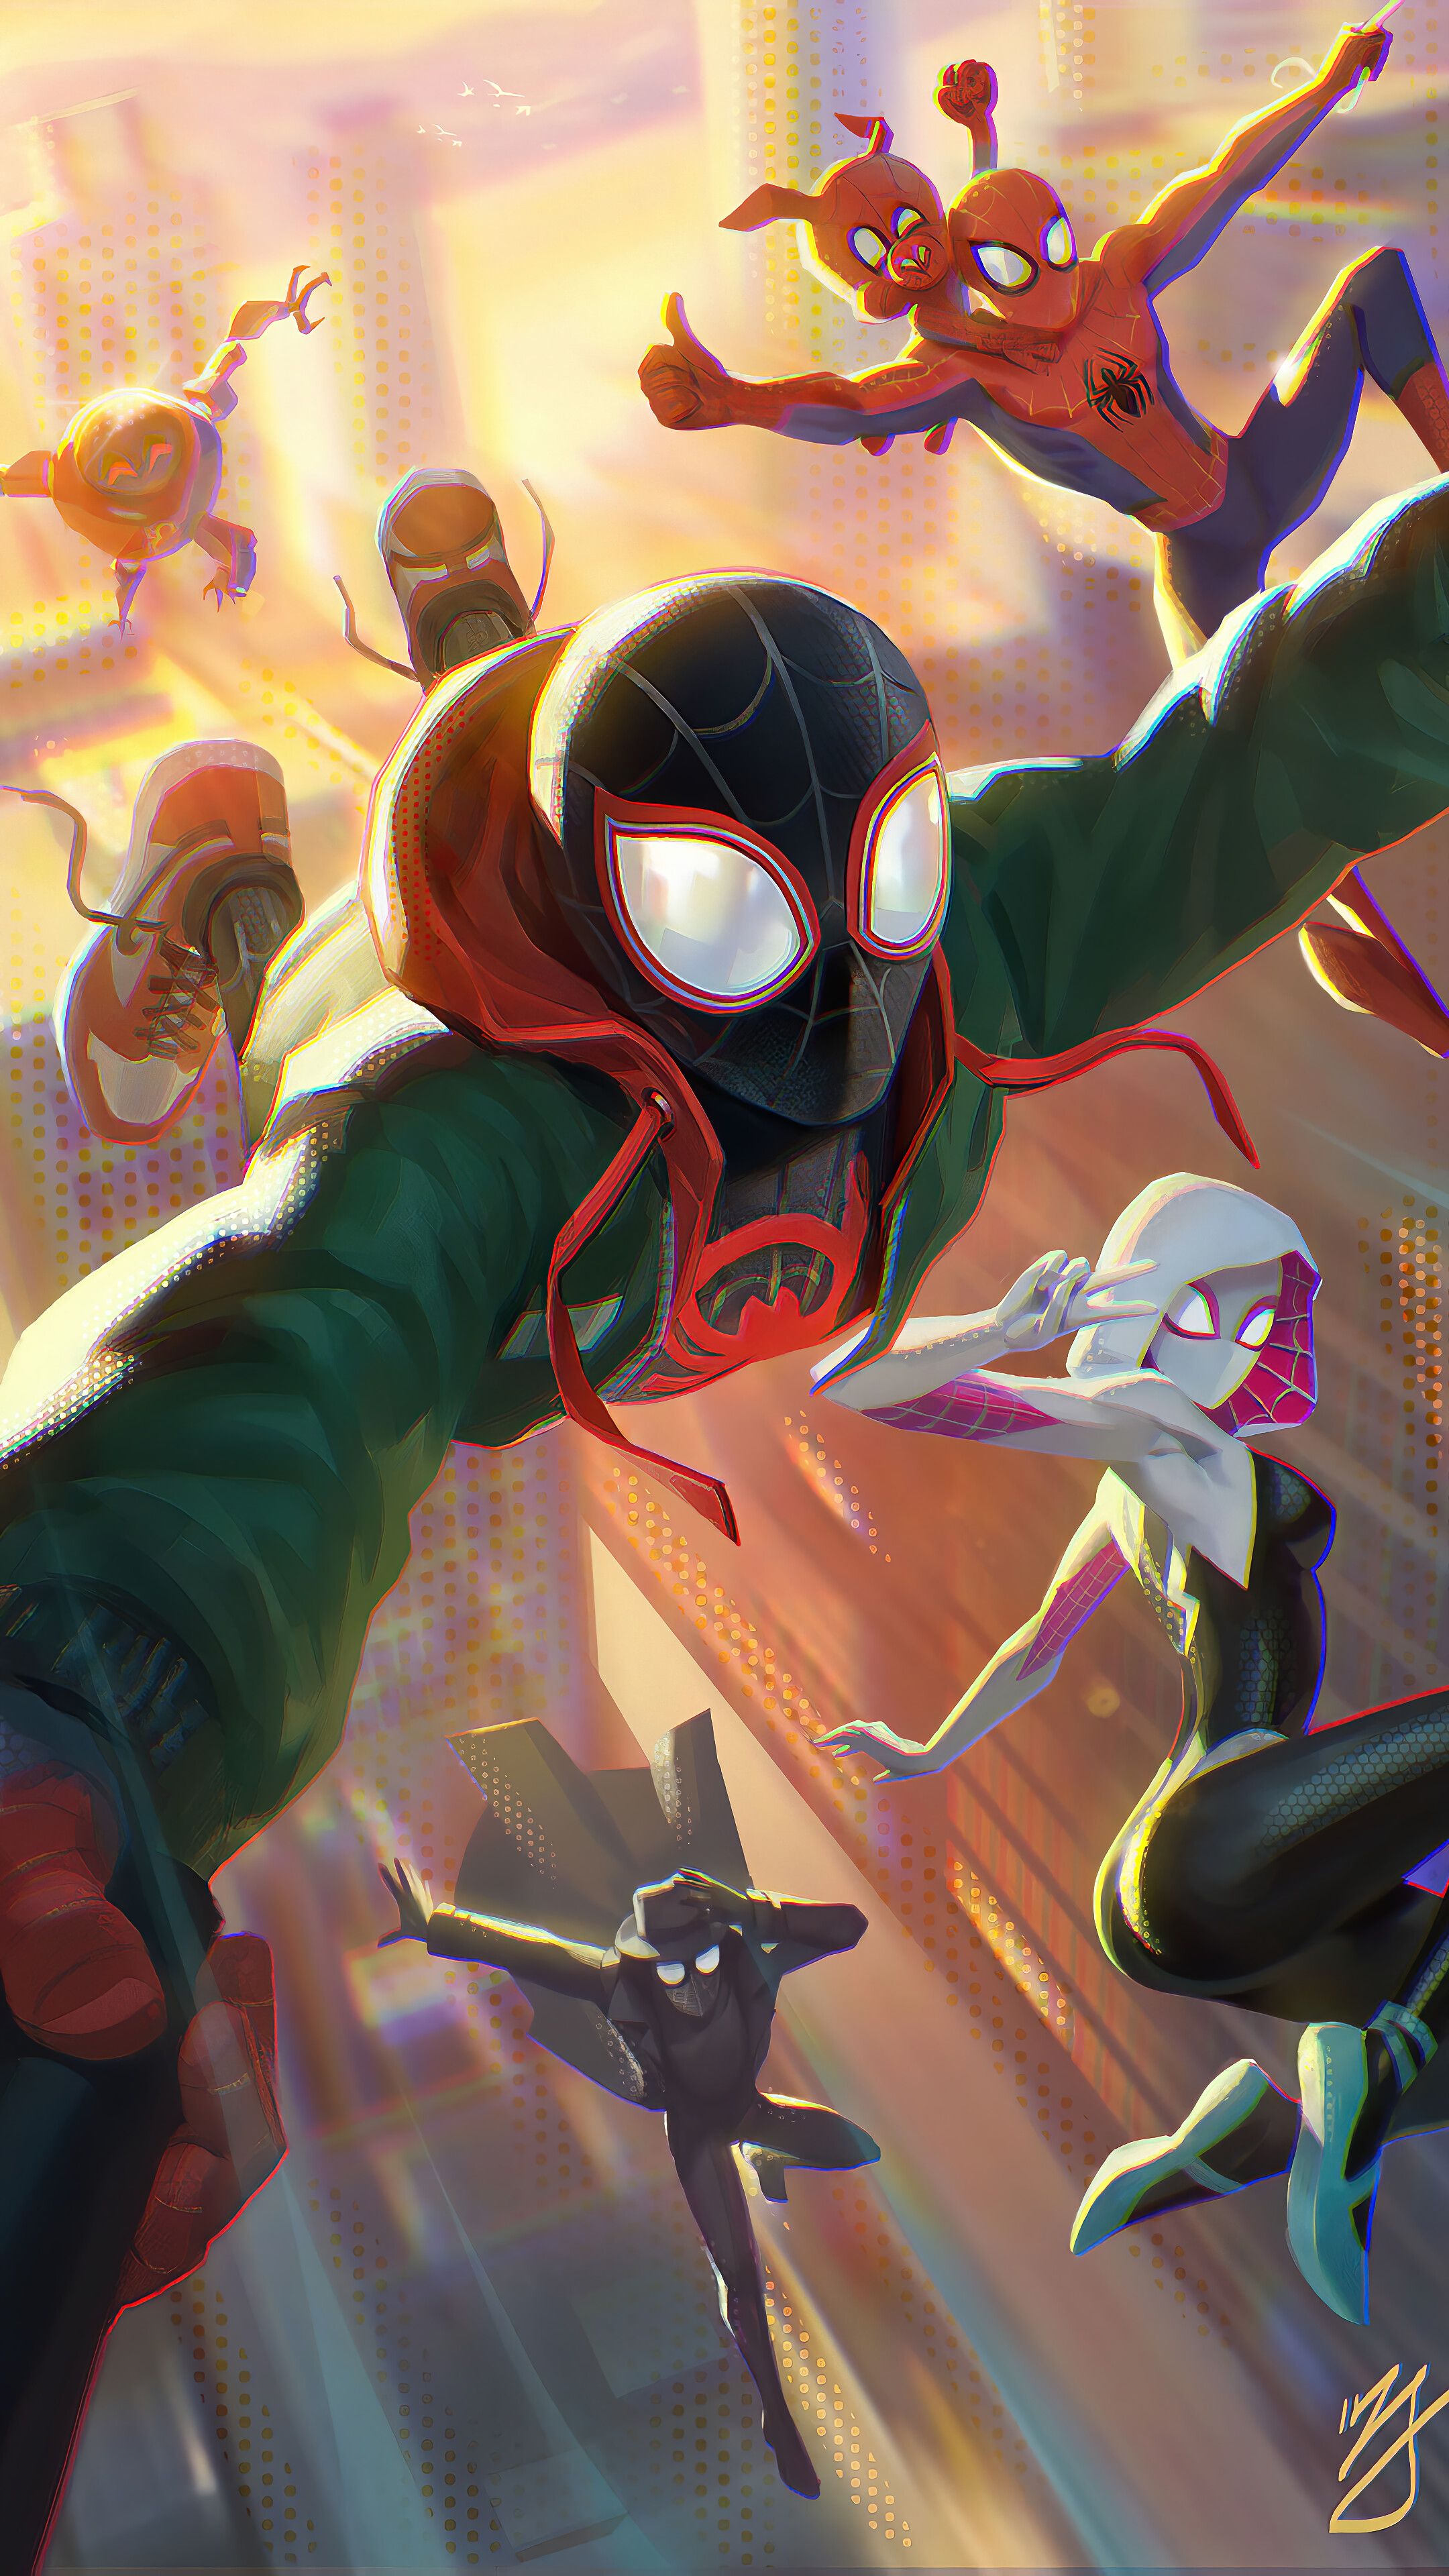 Marvel's Spider-Man: Miles Morales Wallpaper 4K, PlayStation 5